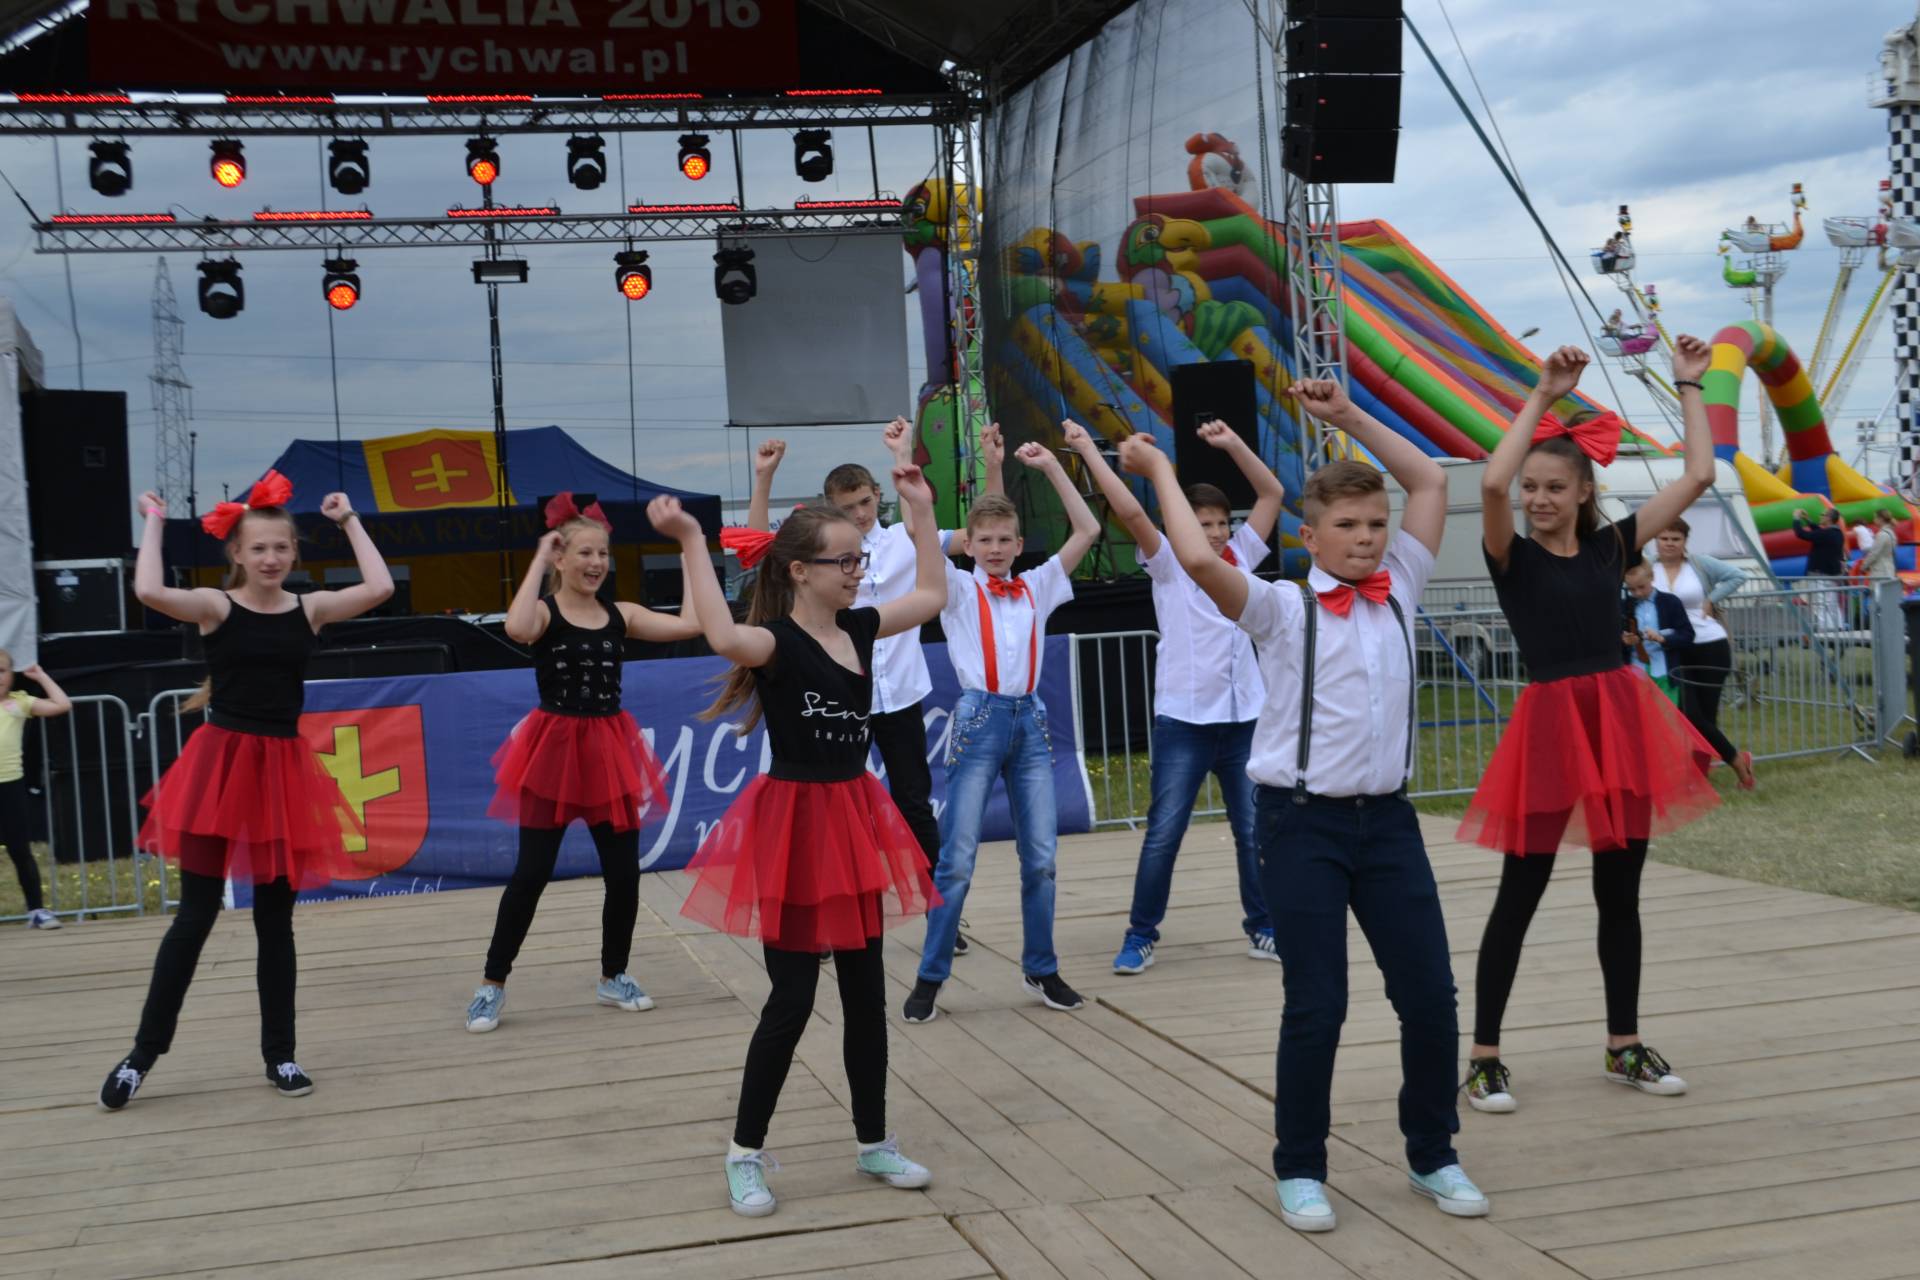 rychwalia 2016 - relacja_12 Zdjęcie przedstawia tańczącą grupę osób